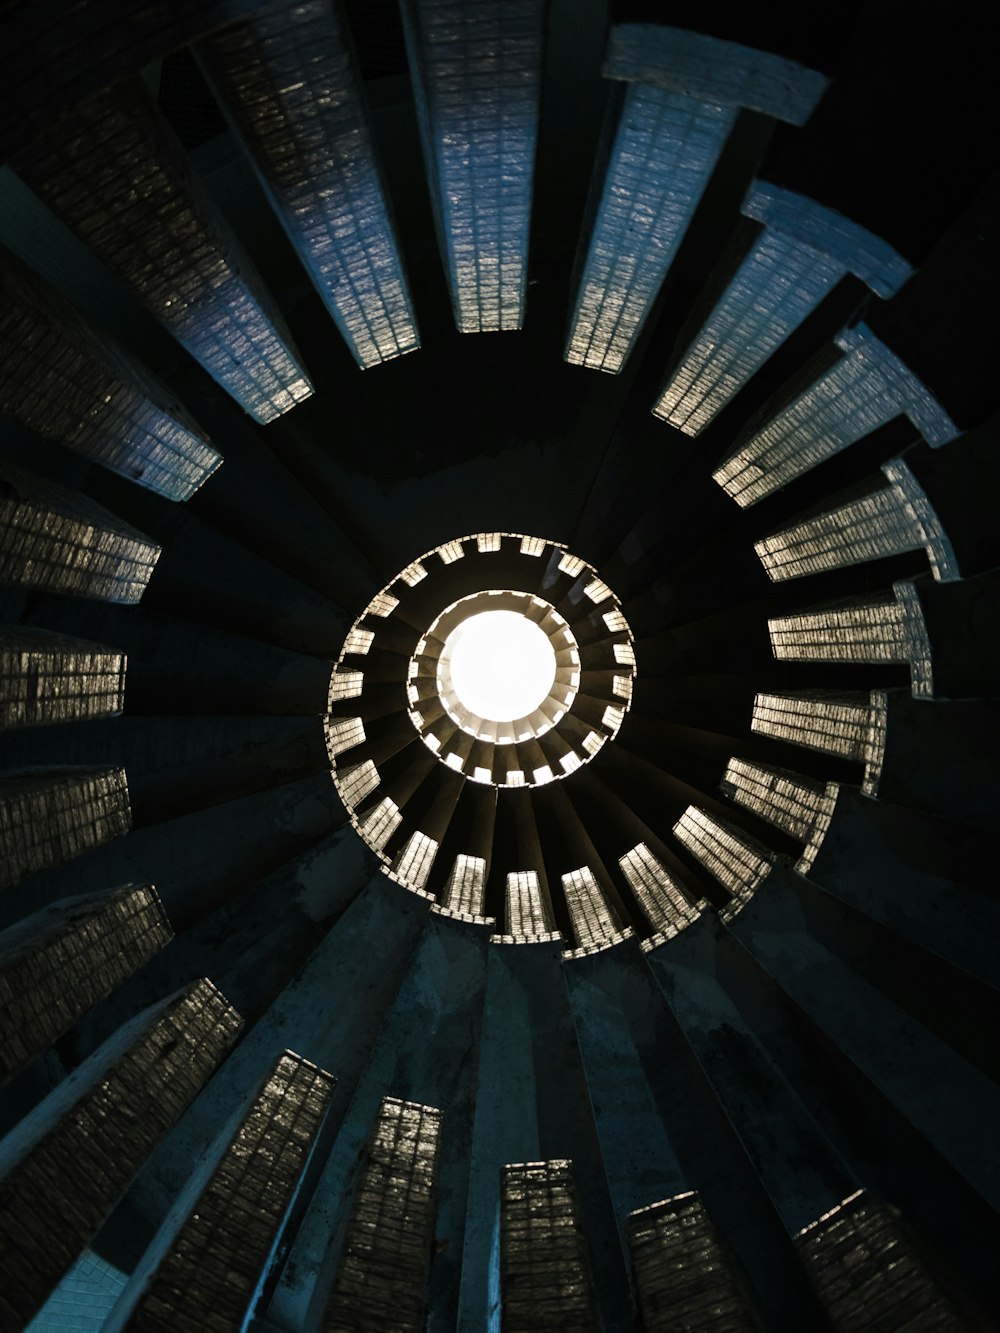 Photographie d’échelle en spirale